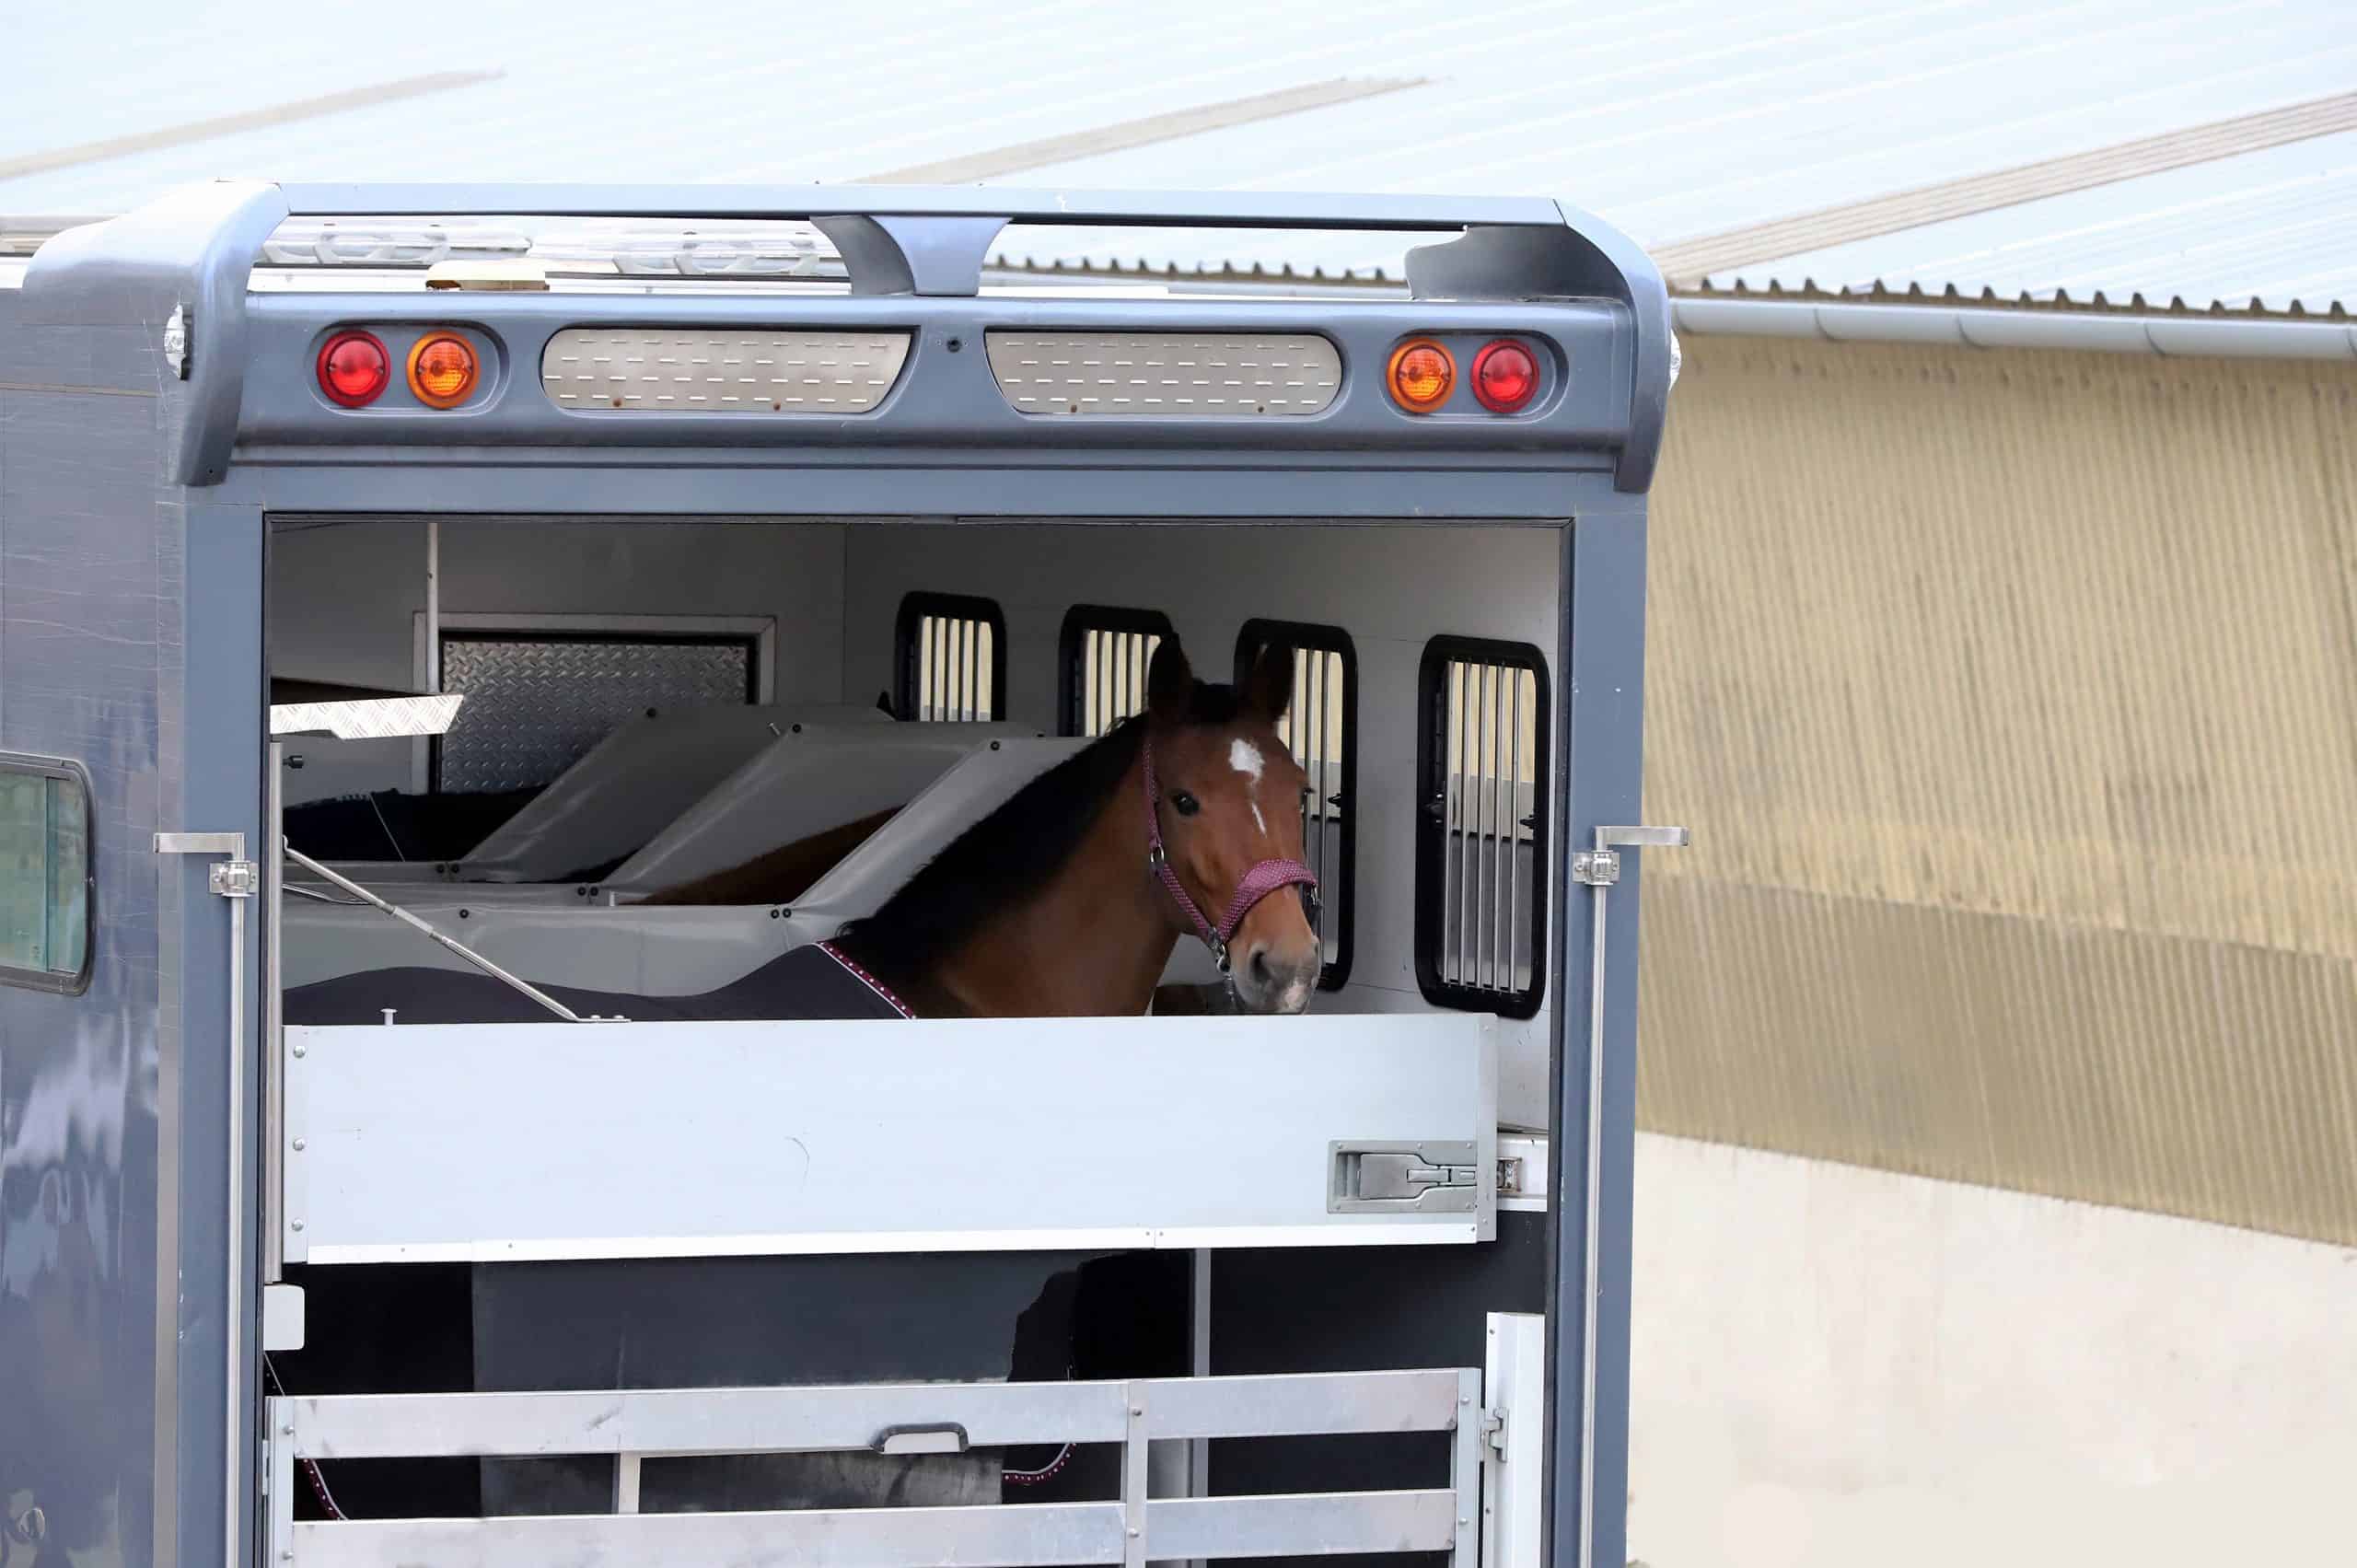 Trailer parking for horse transportation